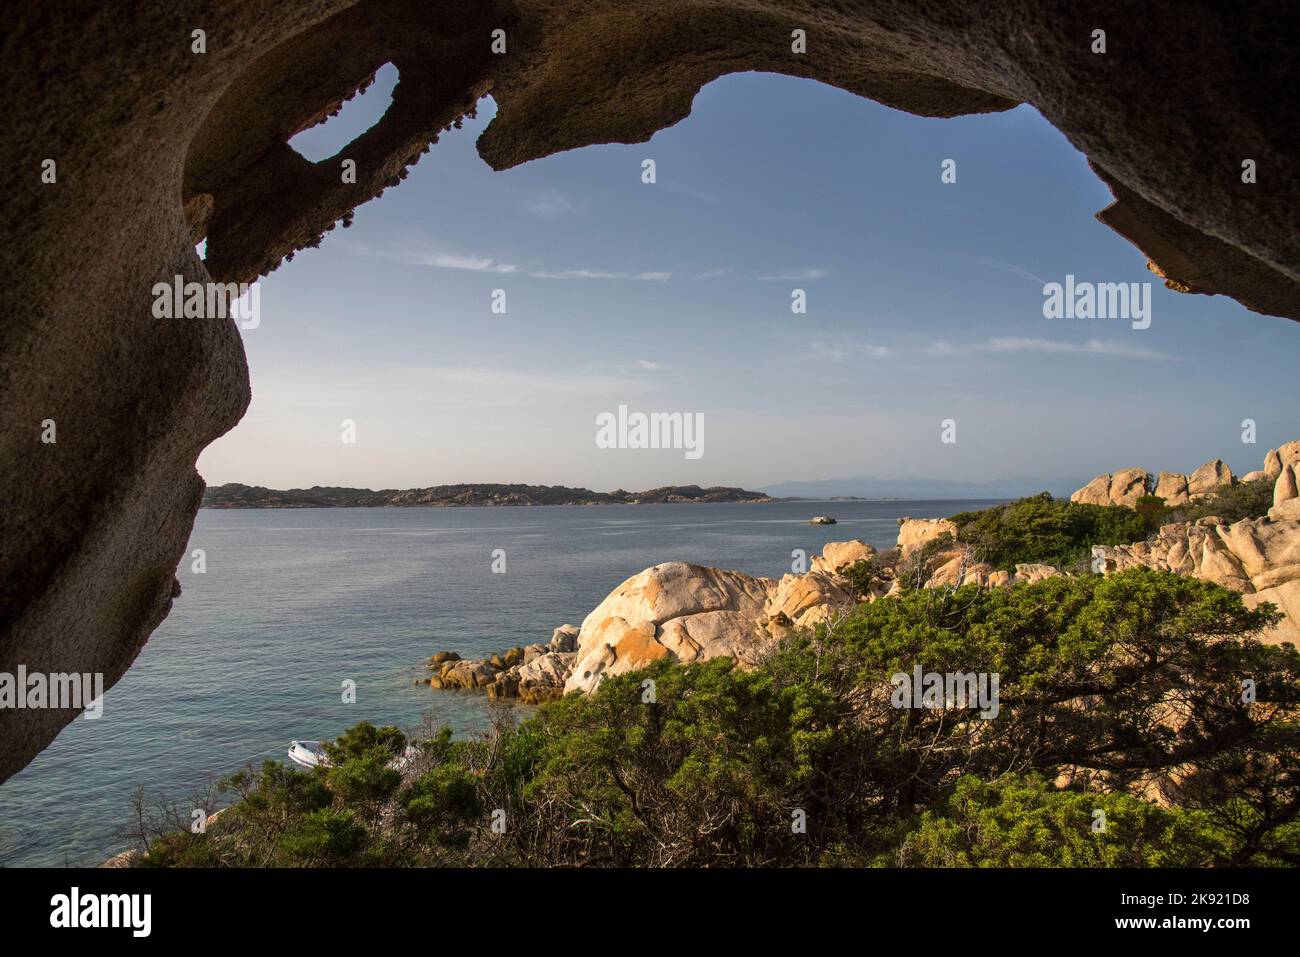 Grotte dell'Arcipelago di La Maddalena, Sardegna Stock Photo